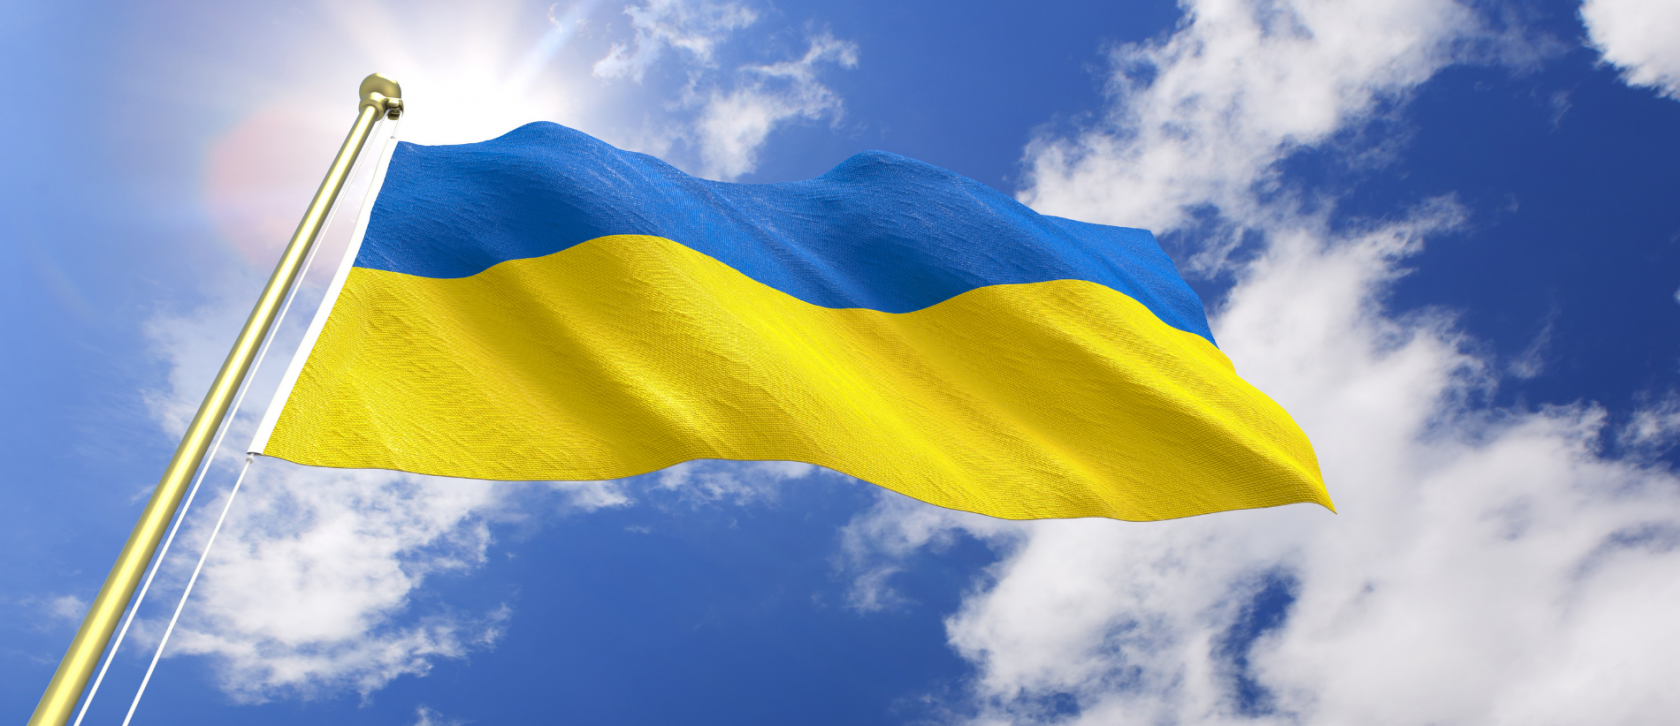 Zgrada šibenskog kazališta svijetlit će u bojama ukrajinske zastave u povodu Dana neovisnosti Ukrajine 